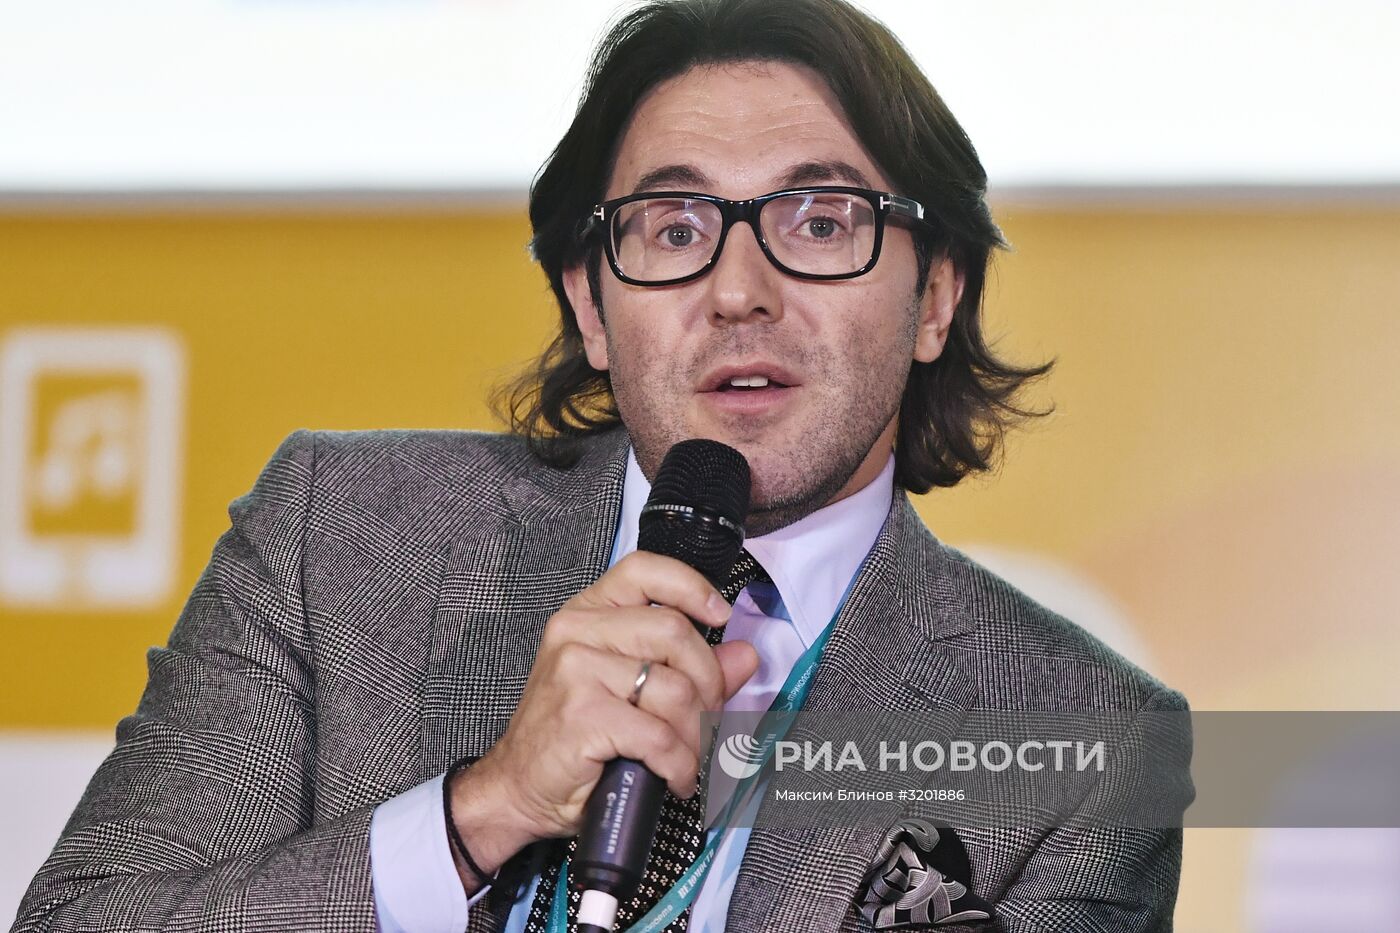 XII ежегодная конференция "Медиабизнес" в Москве